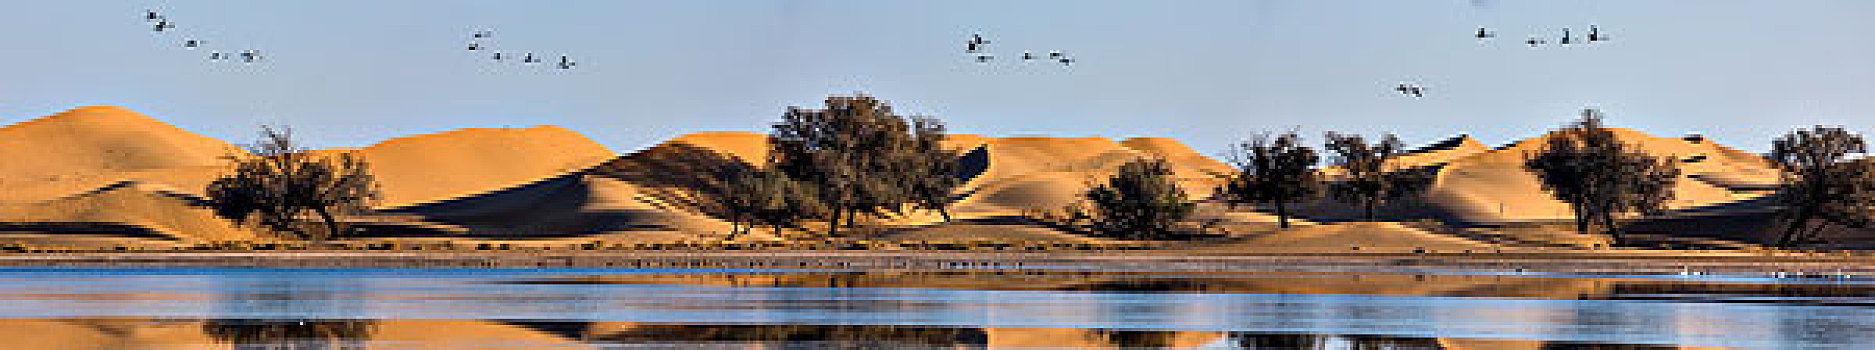 沙漠天鹅全景图